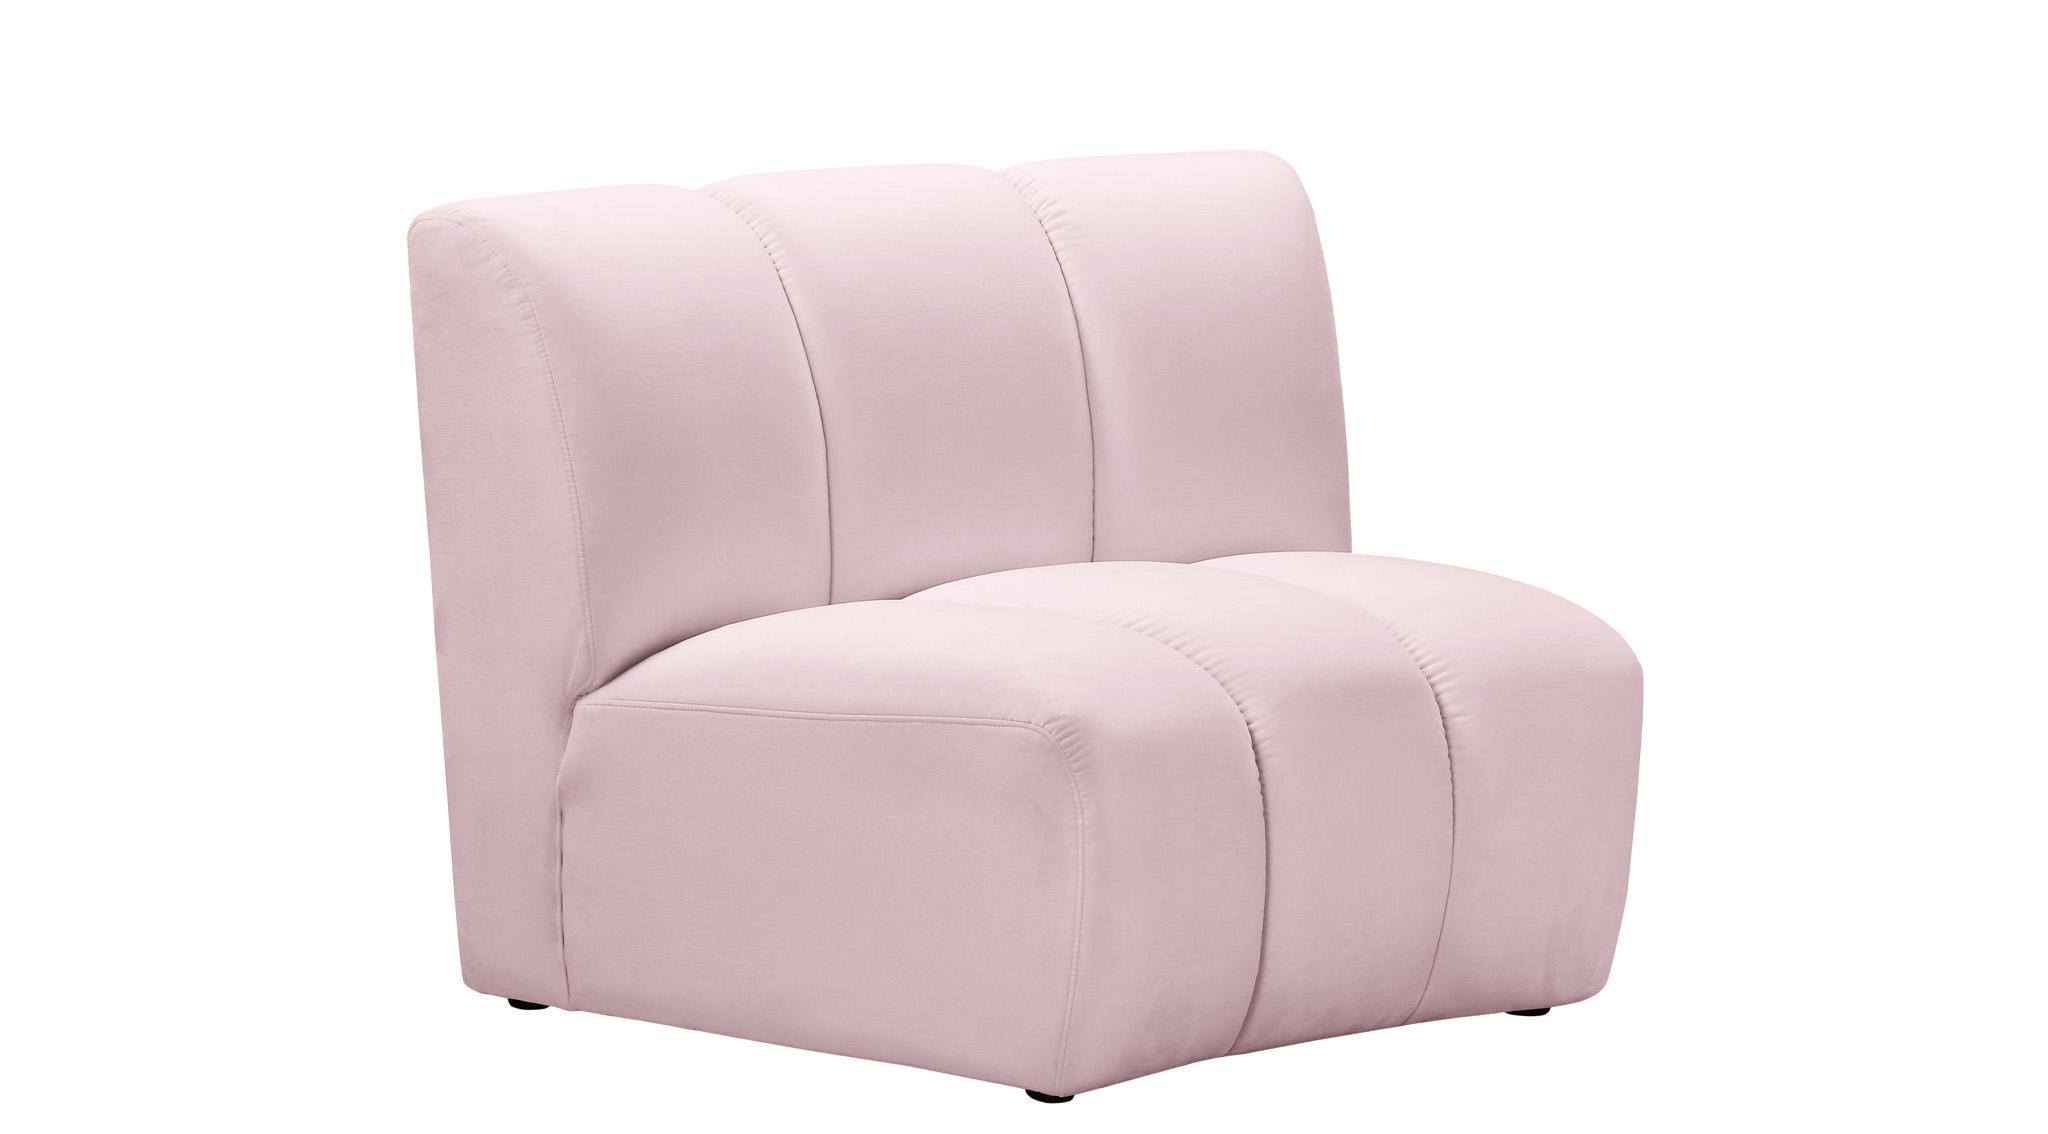 

    
638Pink-12PC Meridian Furniture Modular Sectional Sofa
